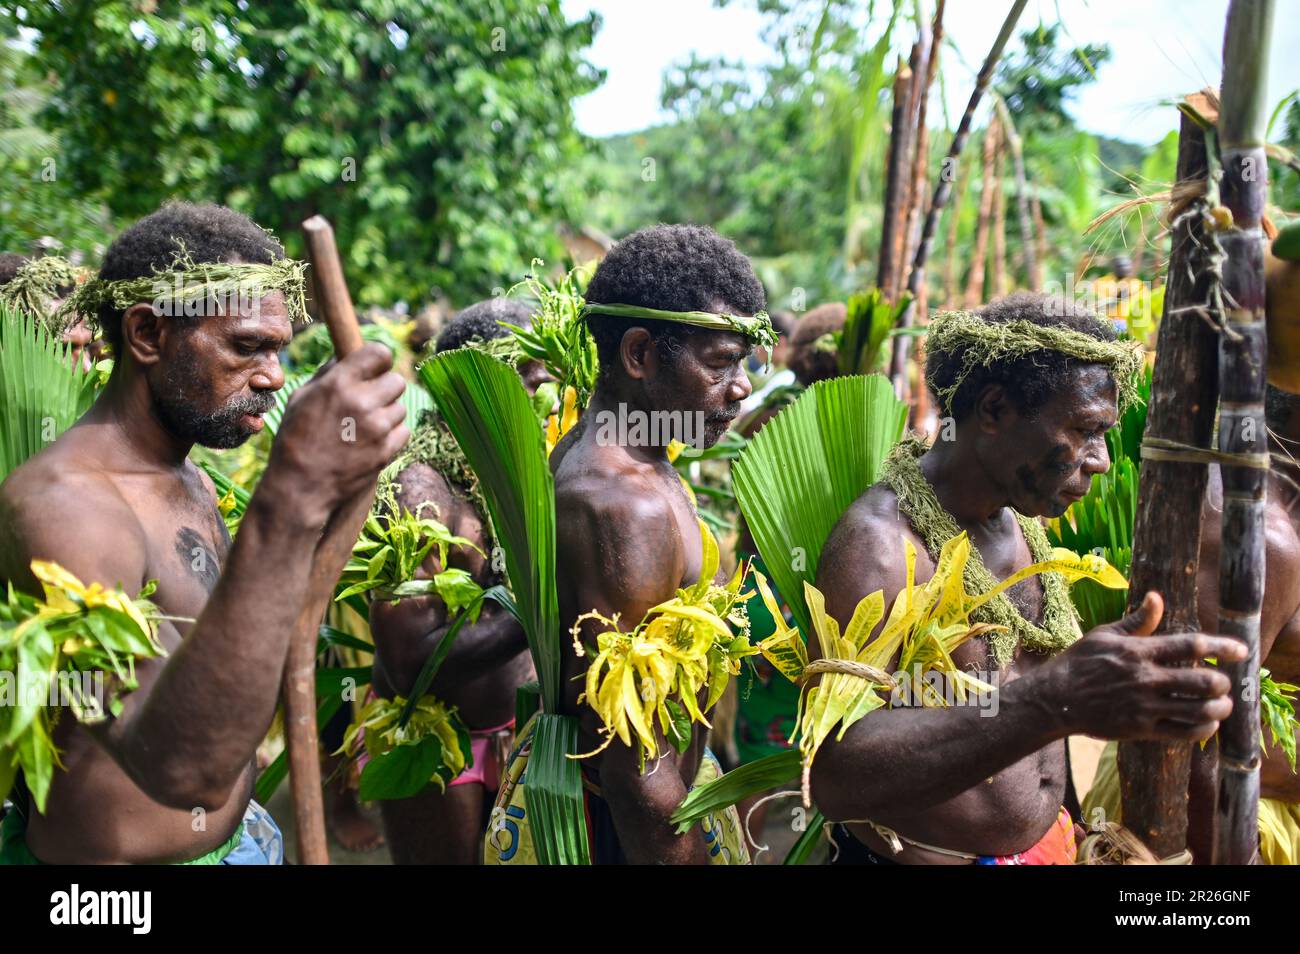 Les danses traditionnelles des peuples autochtones de l'île d'Utupua dans  les îles Salomon sont riches en importance culturelle et souvent  accompagnées de musique et de mouvements rythmiques. La danse de bienvenue  est